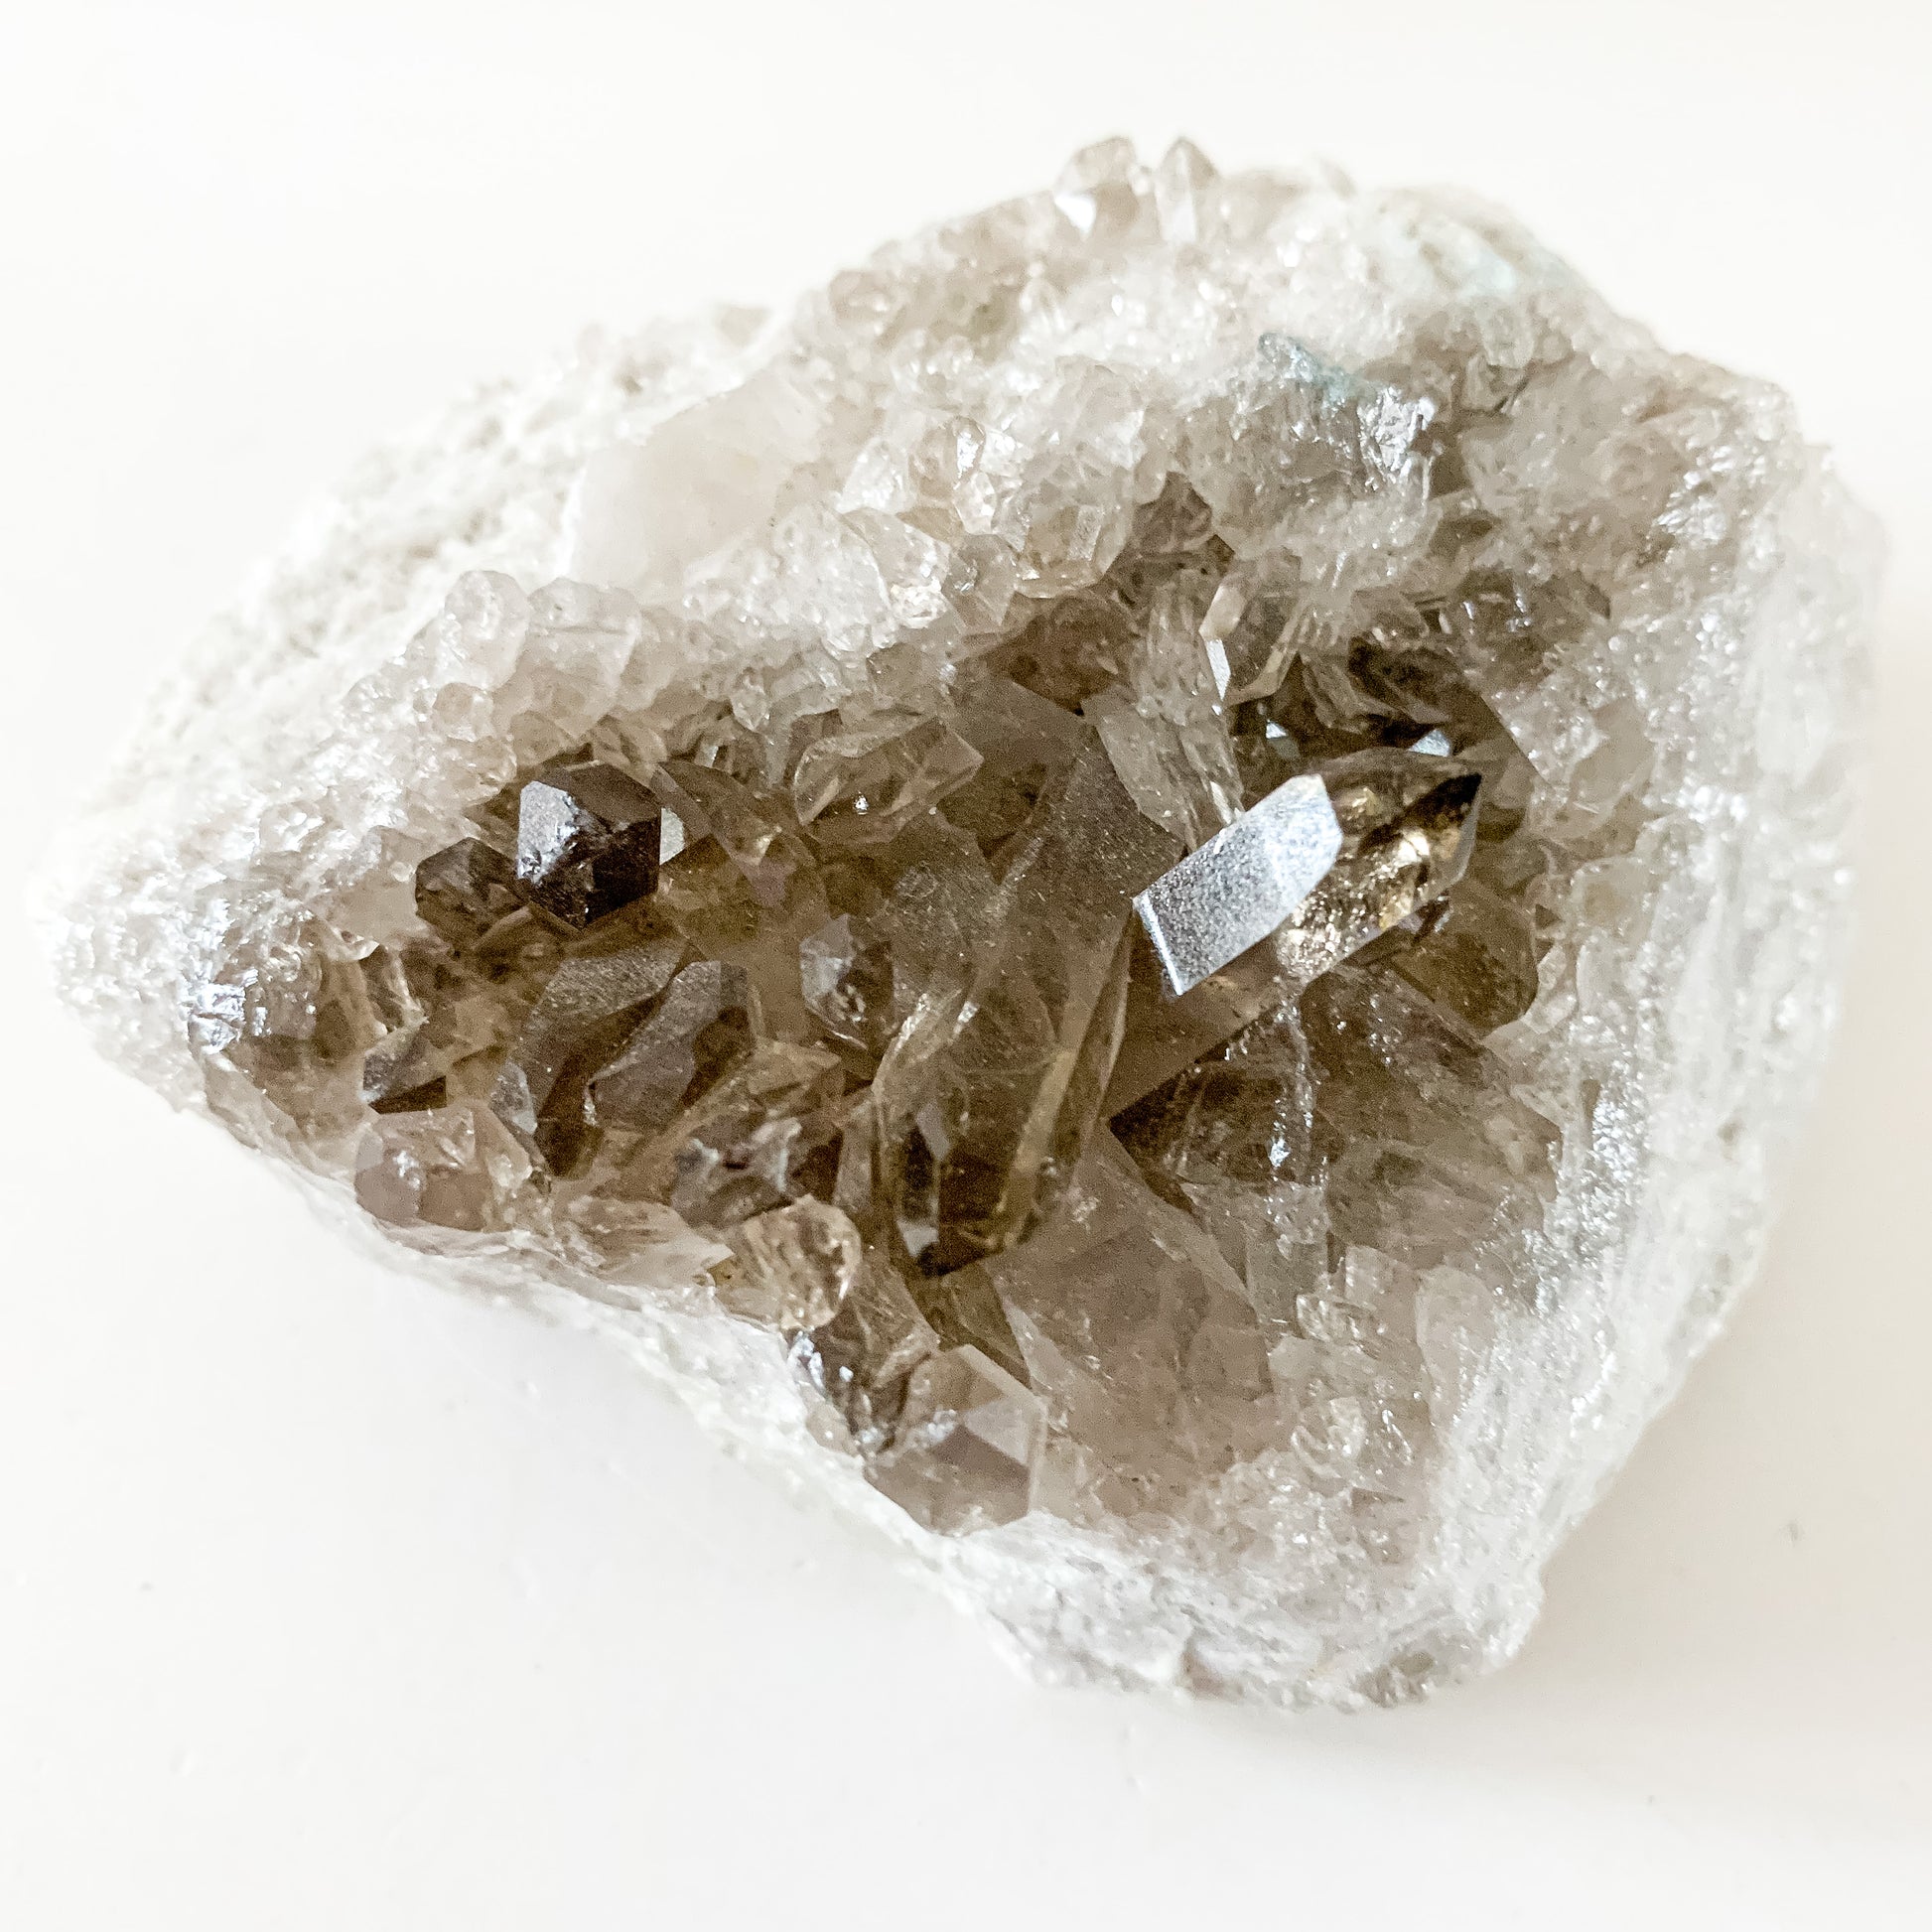 Grounding Smoky Quartz gemstone cluster